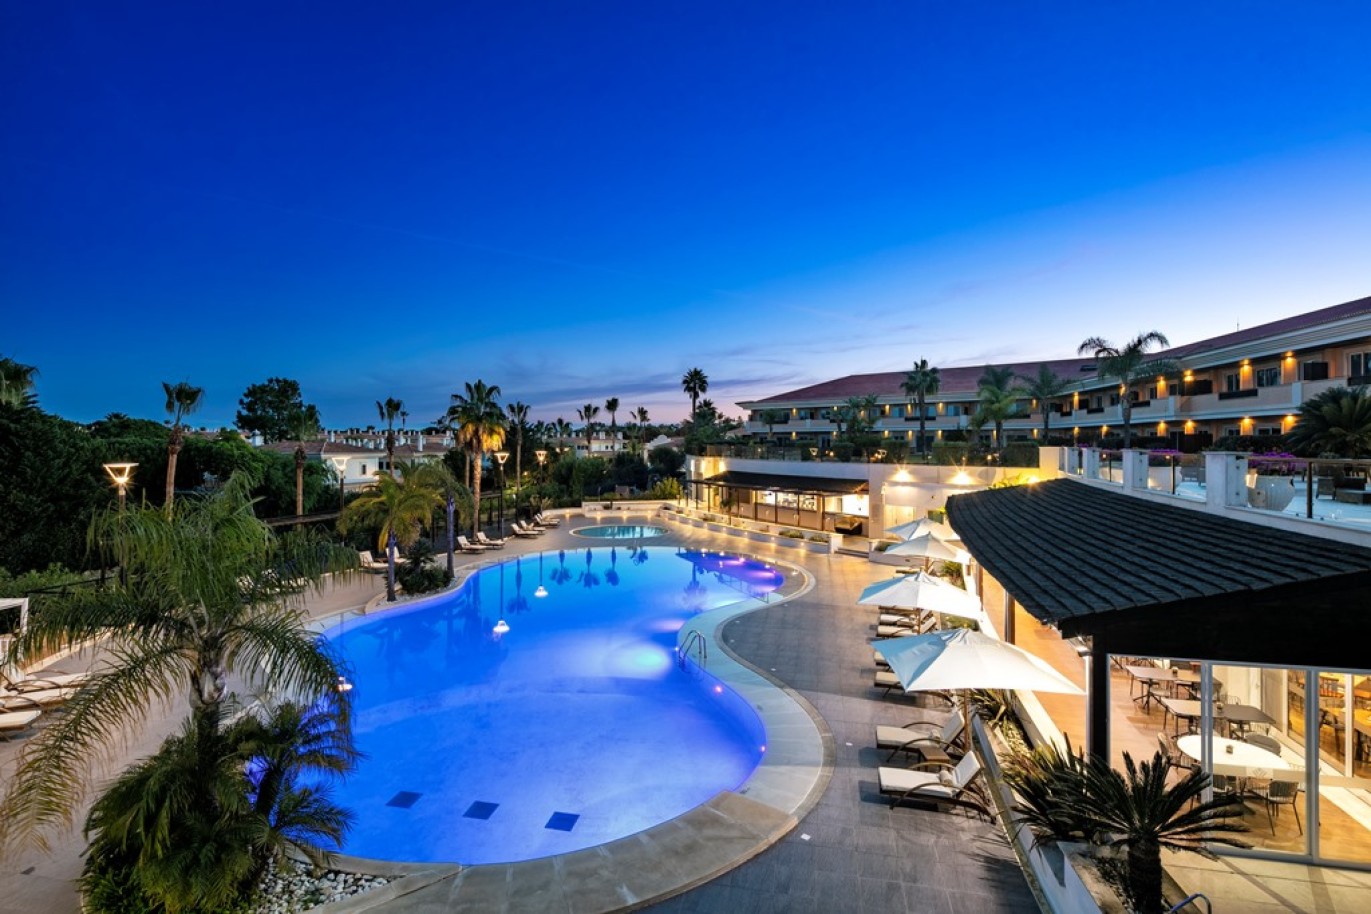 Apartamento, 2 quartos, piscina, para venda na Quinta do Lago, Algarve_263385